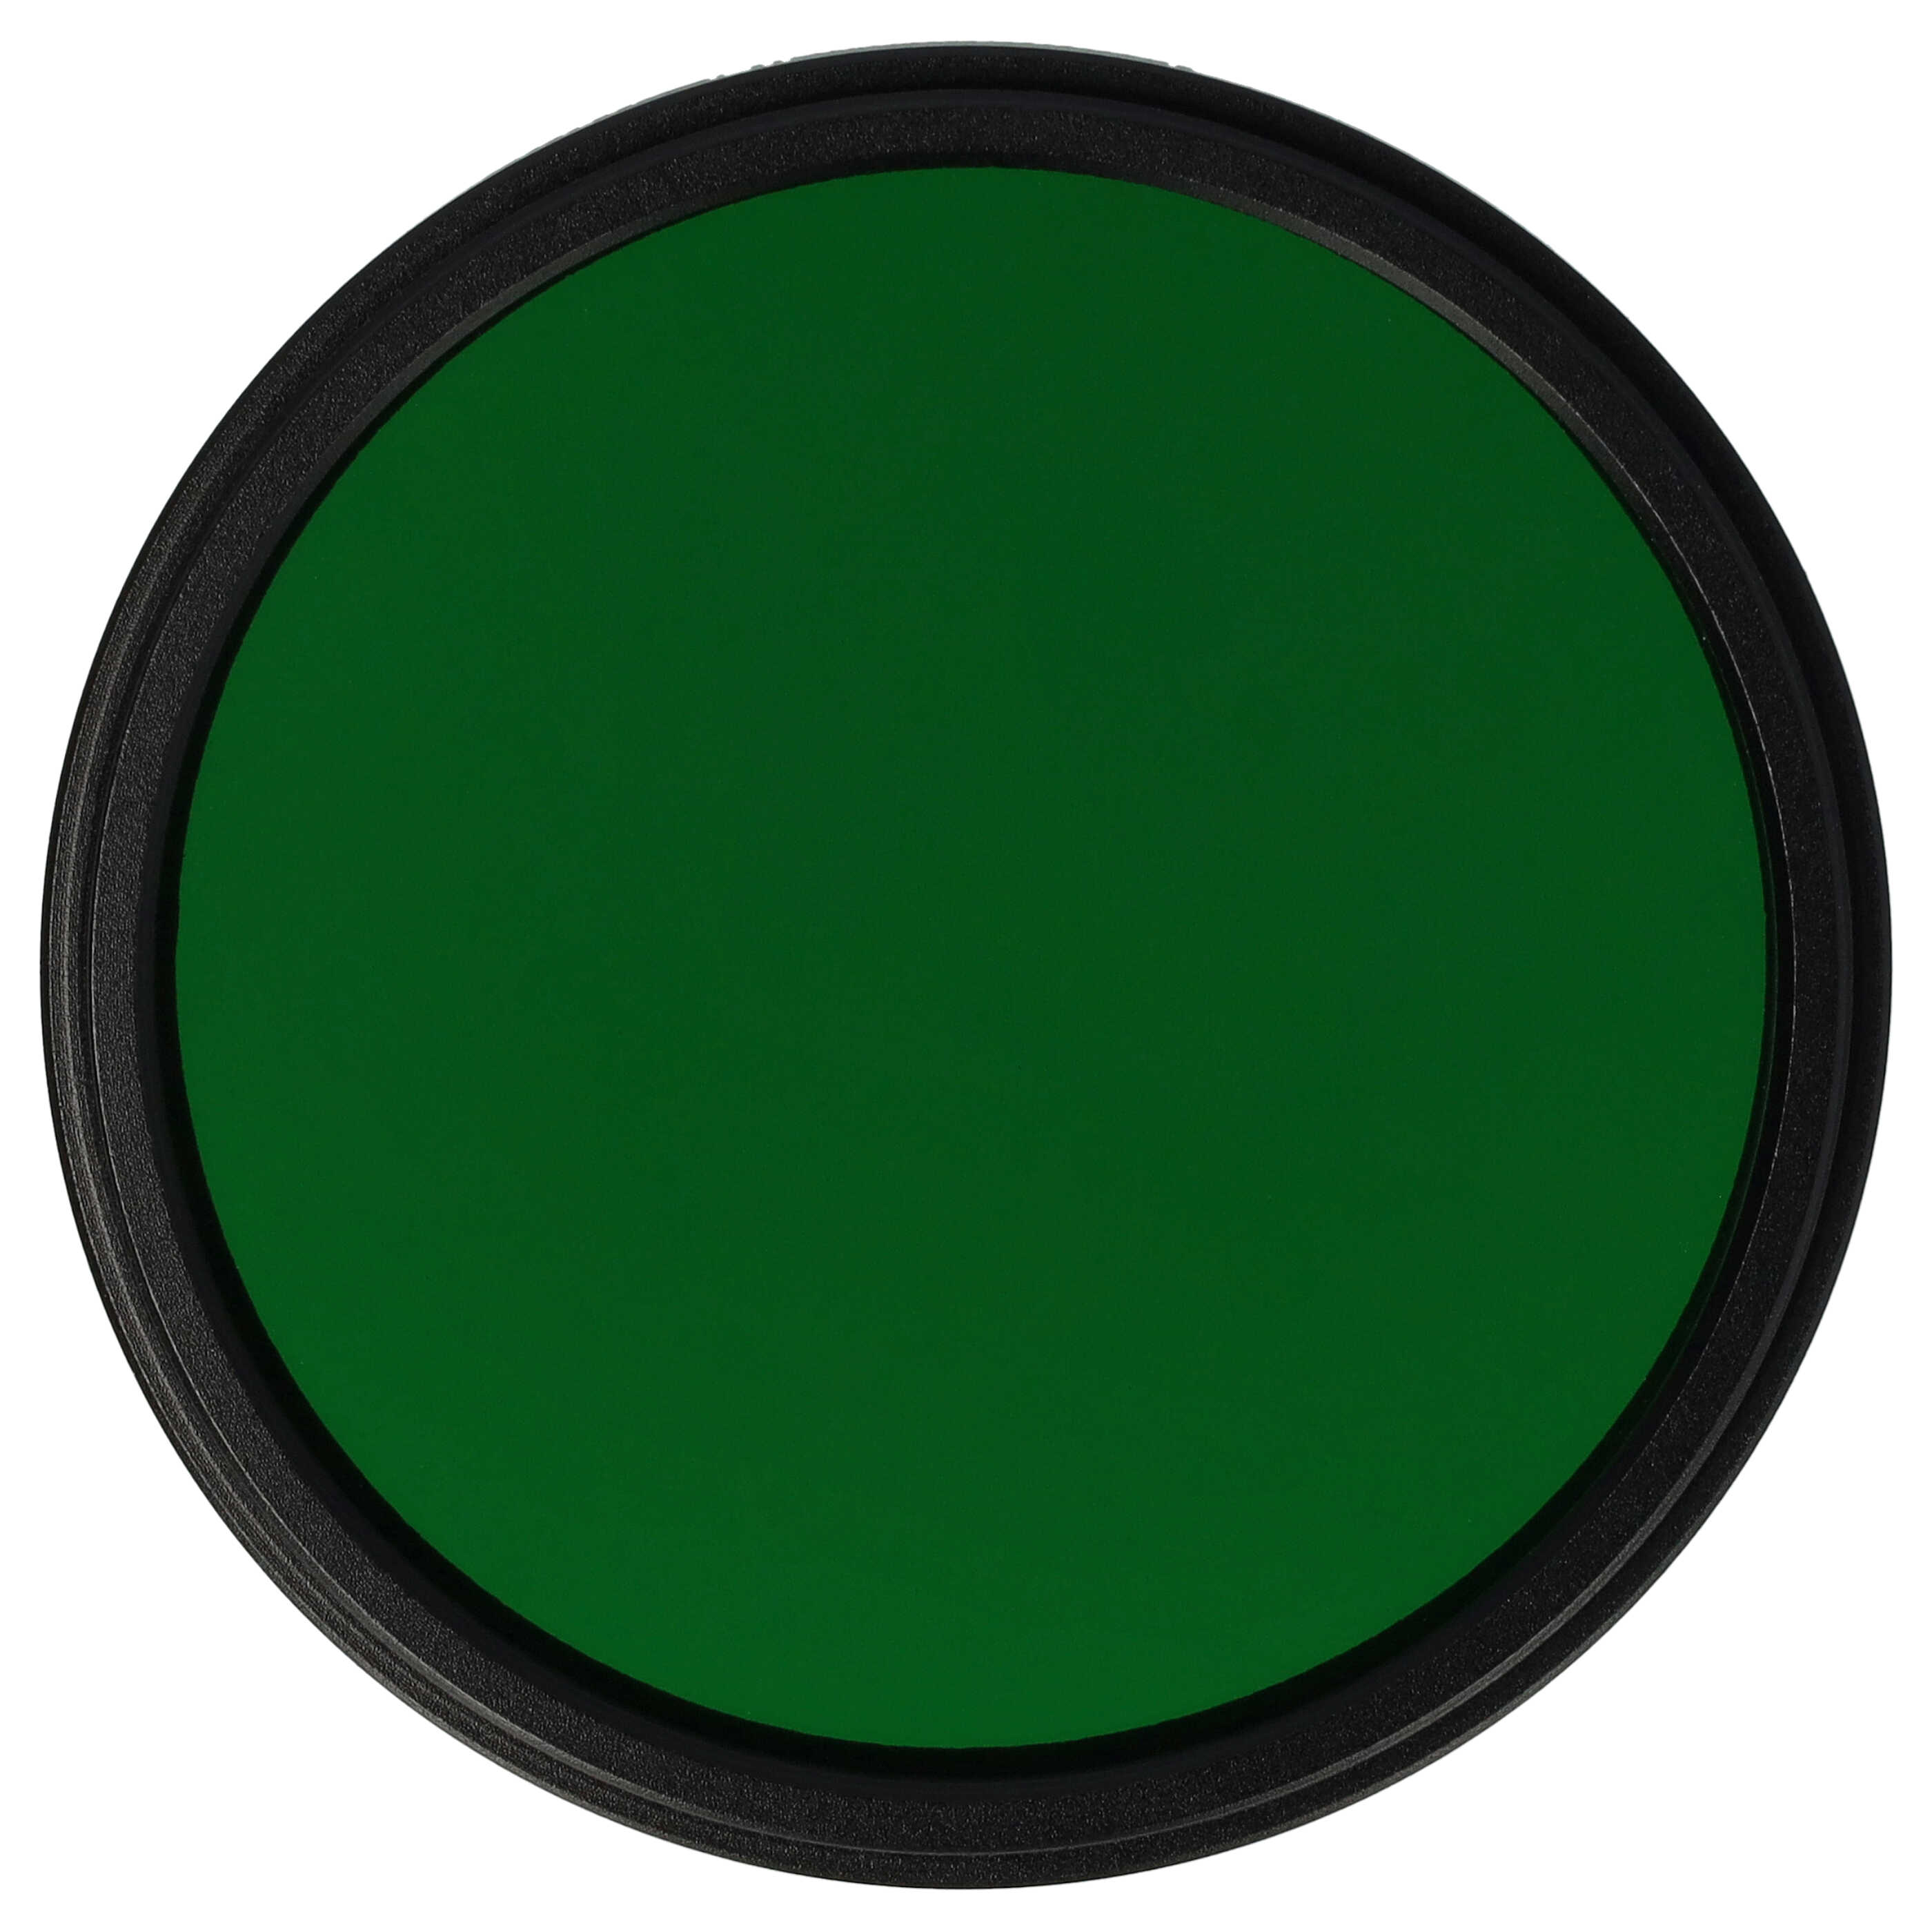 Filtr fotograficzny na obiektywy z gwintem 55 mm - filtr zielony